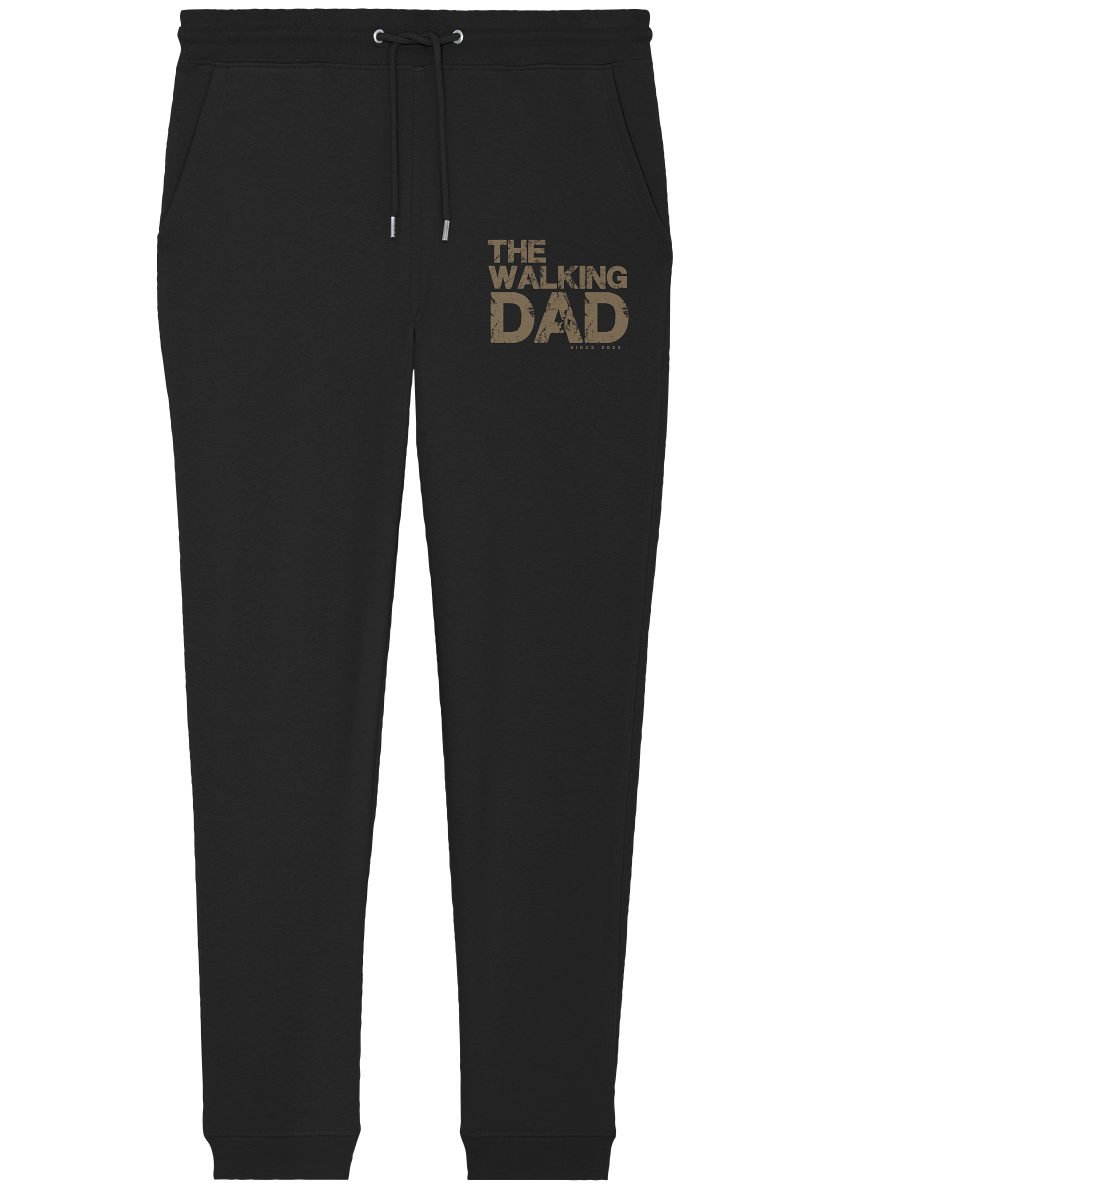 THE WALKING DAD, calças de jogging, encontro pessoal - Calça Jogger Orgânica